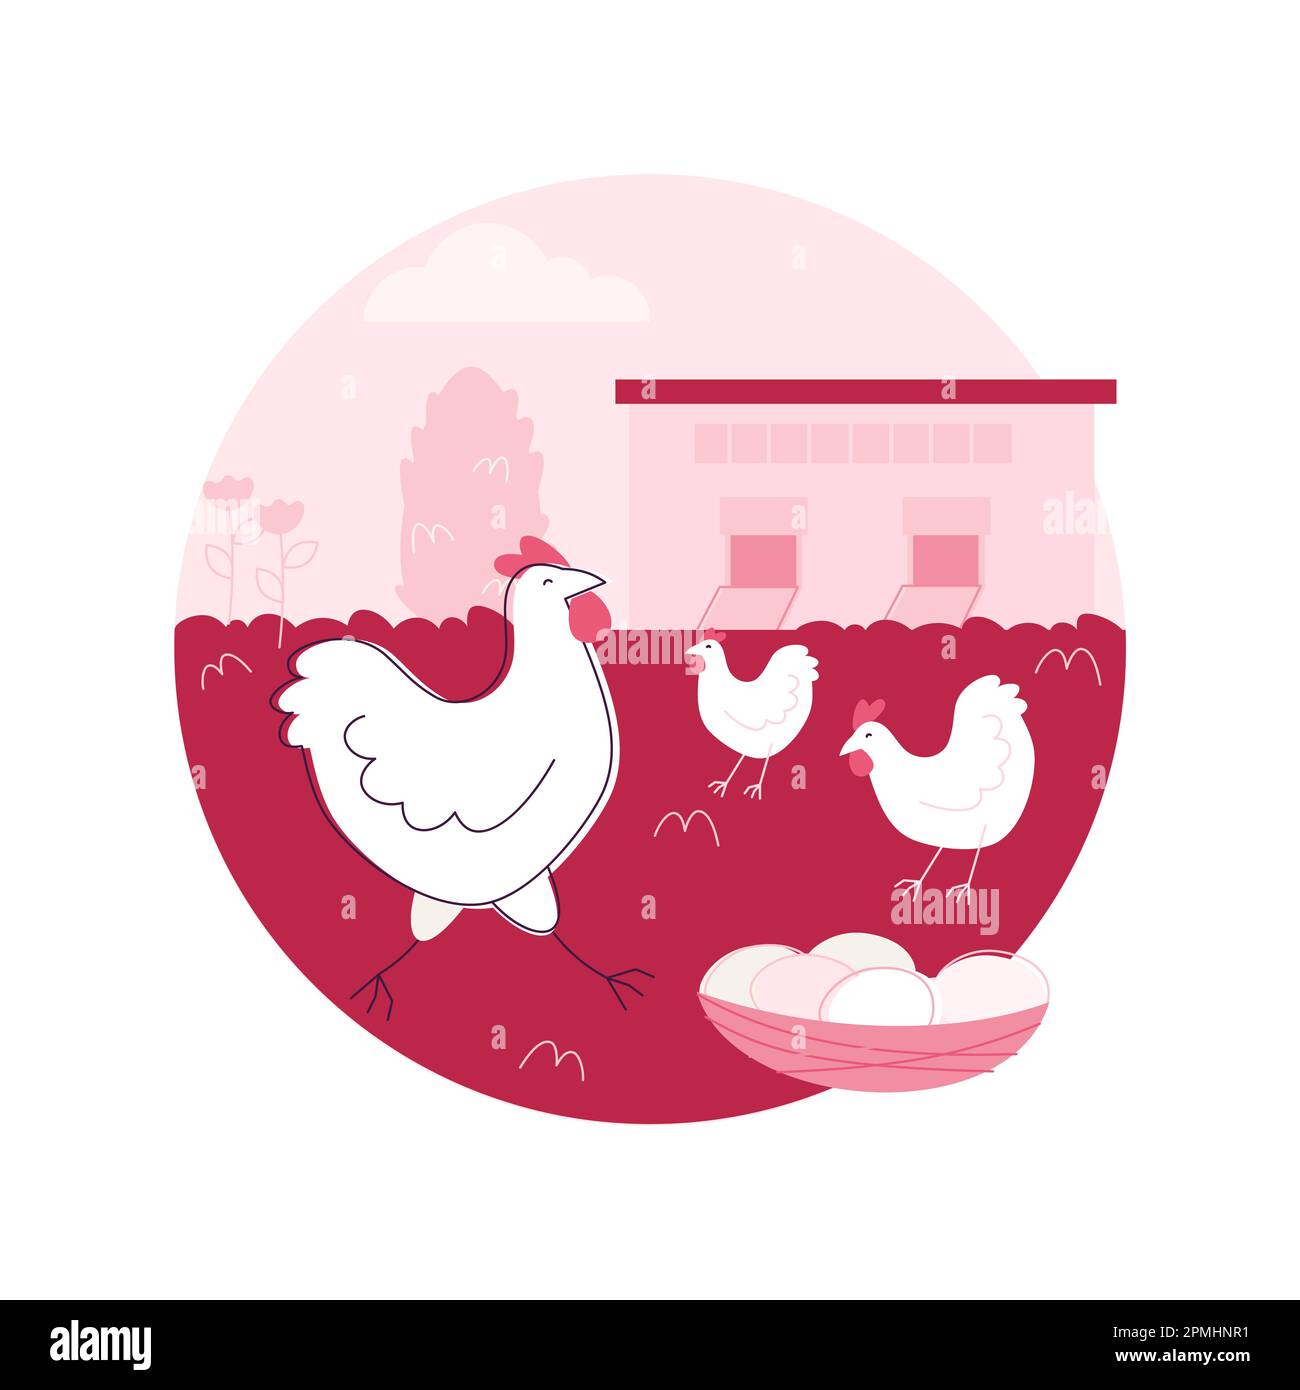 Freilaufiges Huhn und Eier abstraktes Konzept Vektor-Illustration. Käfigfreie Eier, Bio-Lebensmittel, nährstoffreiche Ernährung, glückliche Hühner, Lebensmittelkennzeichnung, Abstrakte Metapher für organische Zertifizierungen. Stock Vektor